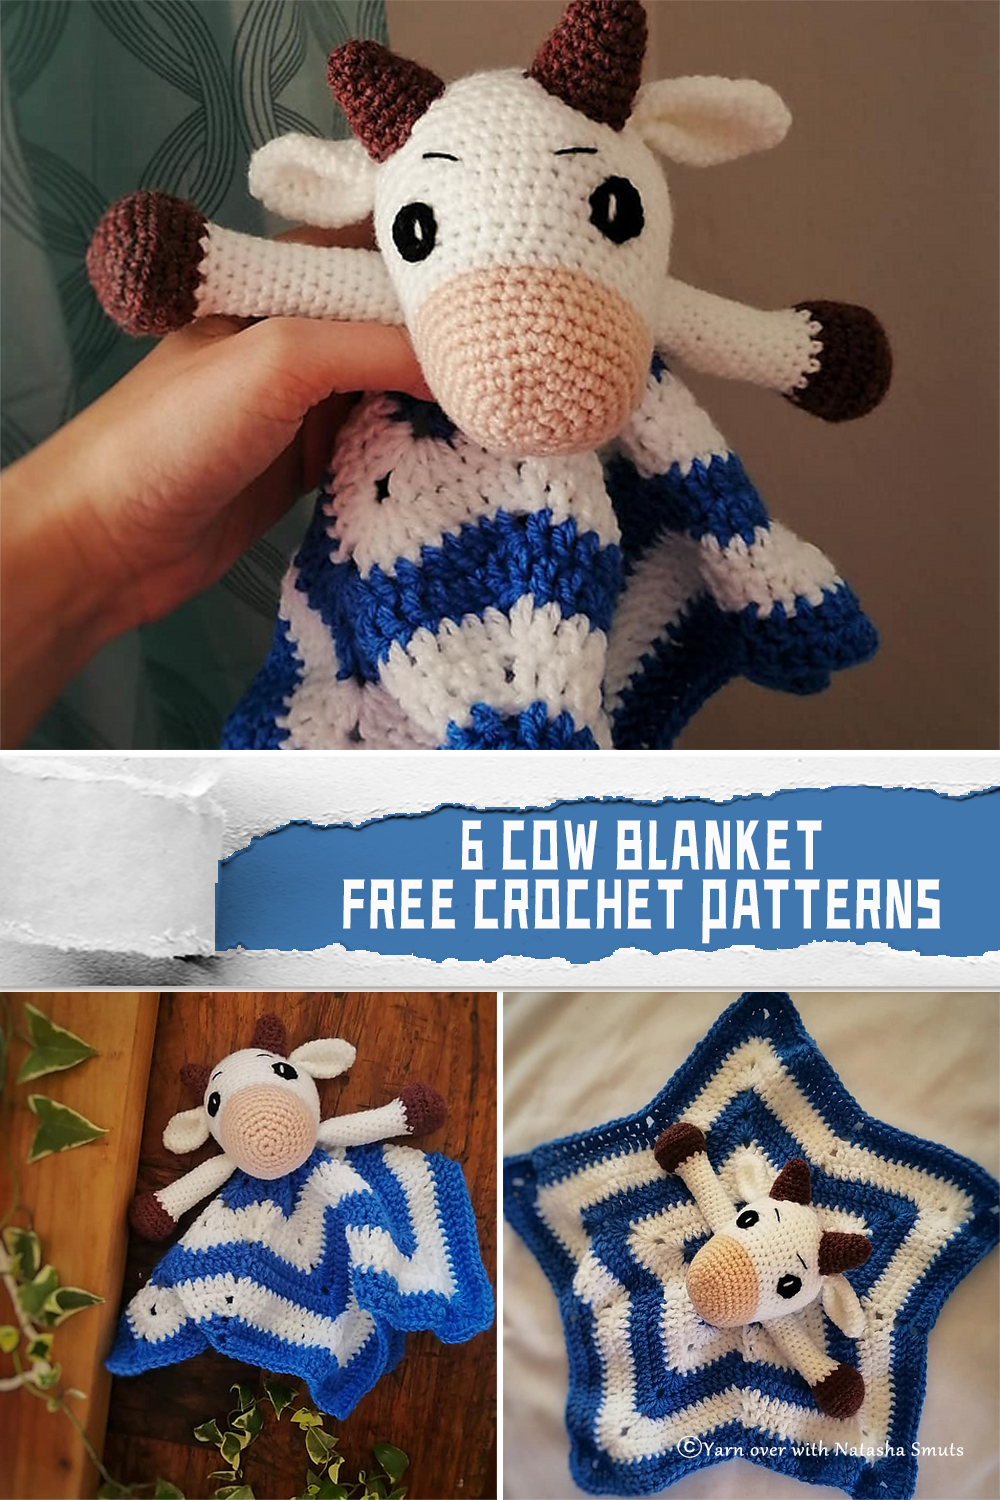 6 Cow Blanket Crochet Patterns - FREE